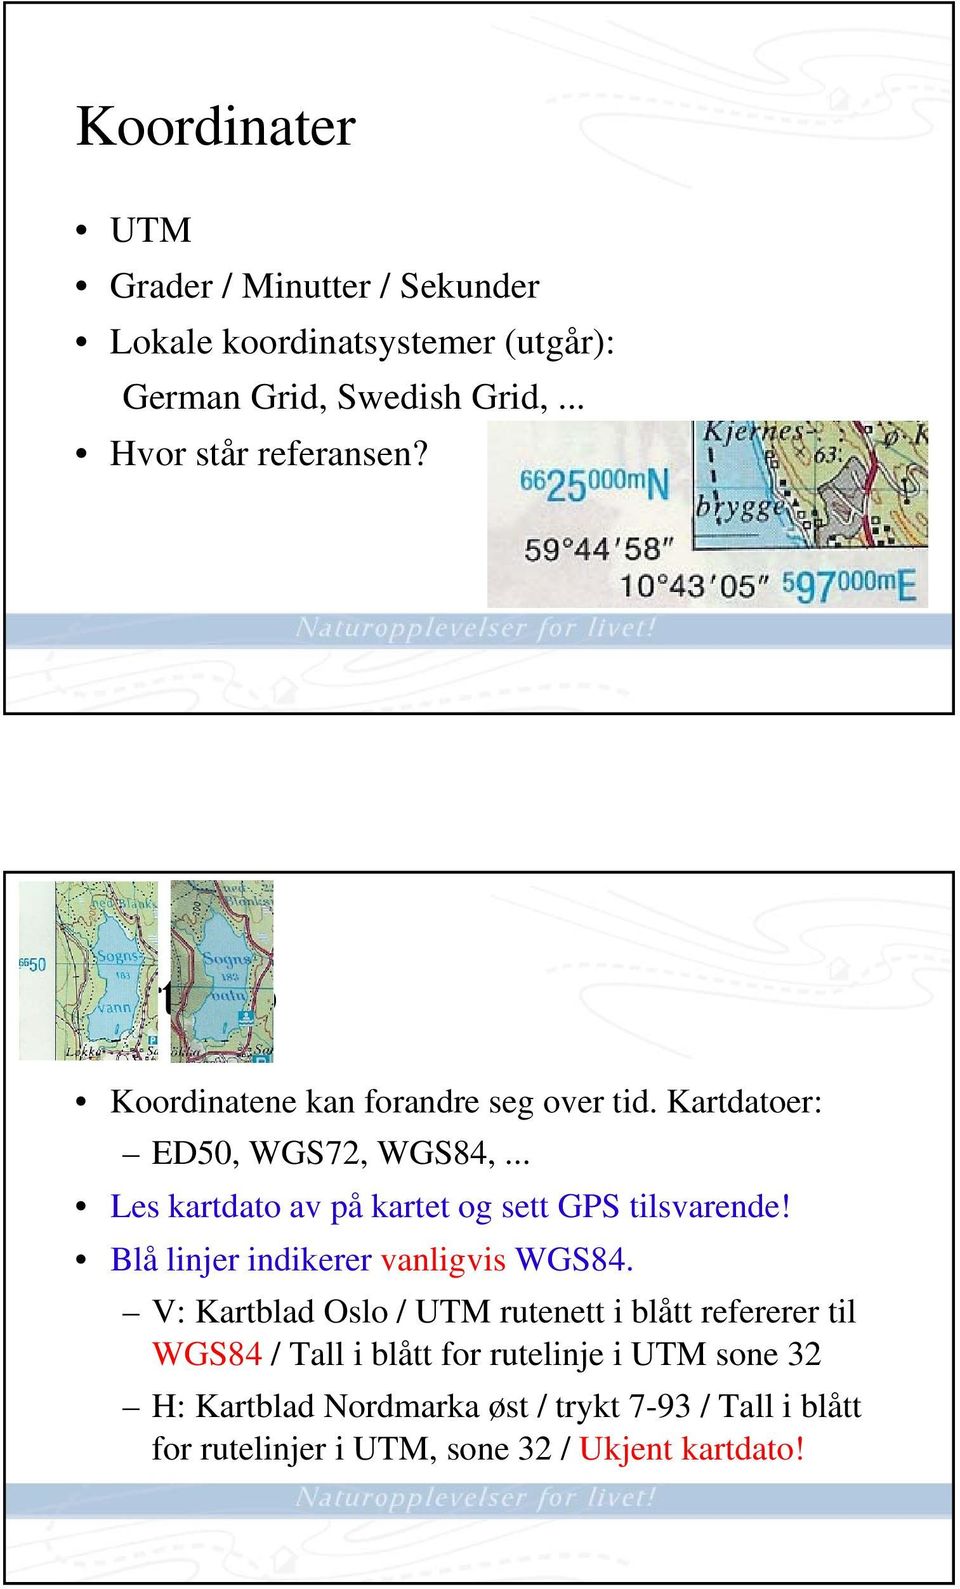 .. Les kartdato av på kartet og sett GPS tilsvarende! Blå linjer indikerer vanligvis WGS84.